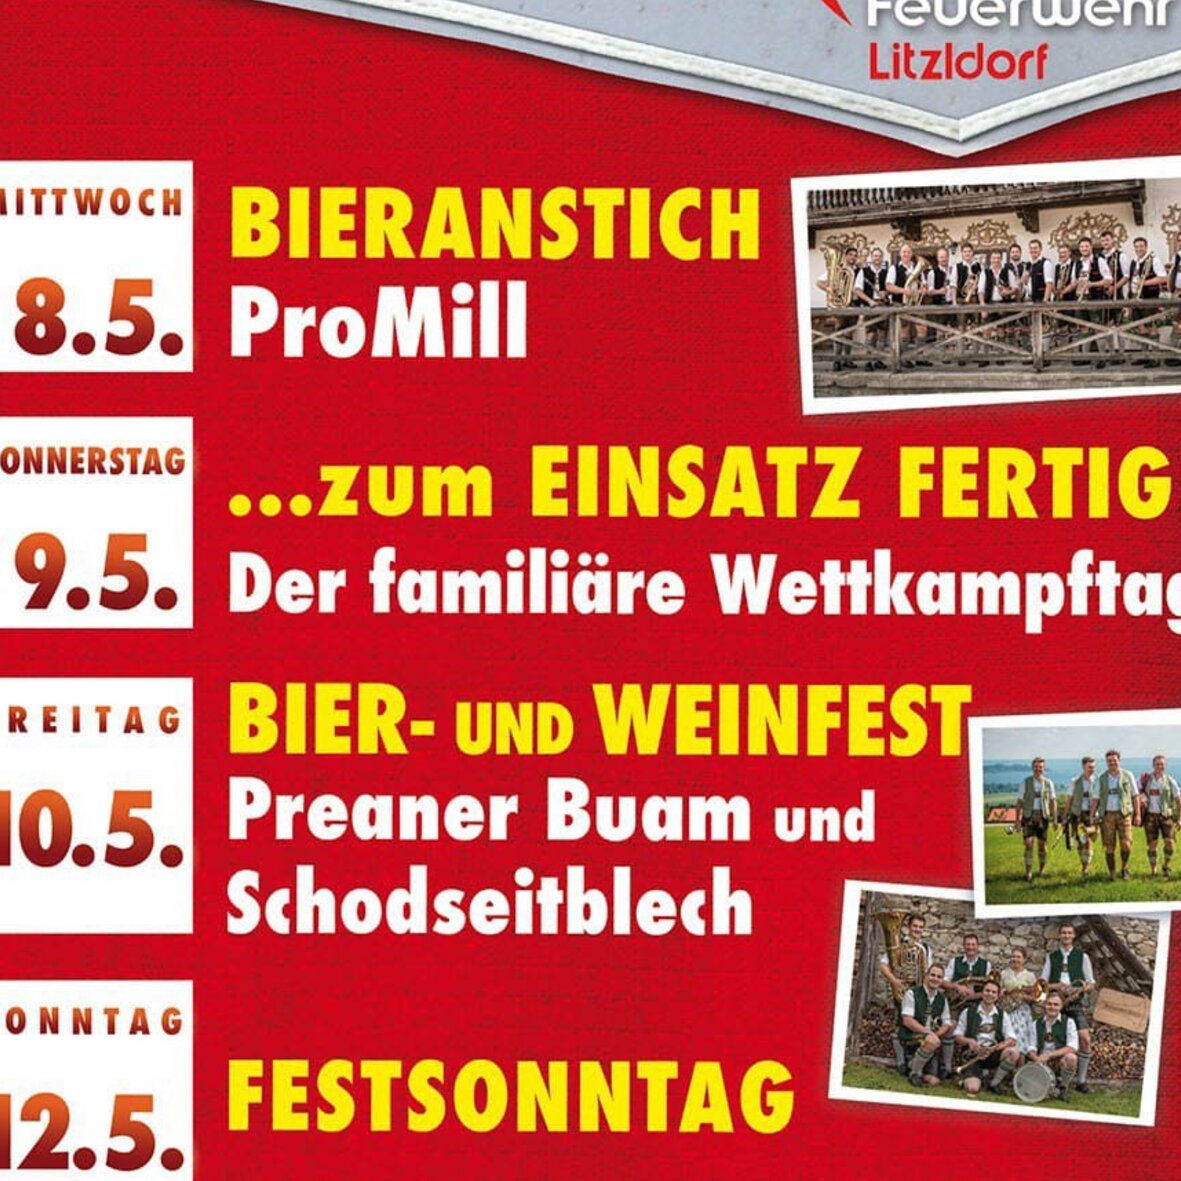 150 Jahre FFW Litzldorf - Festsonntag